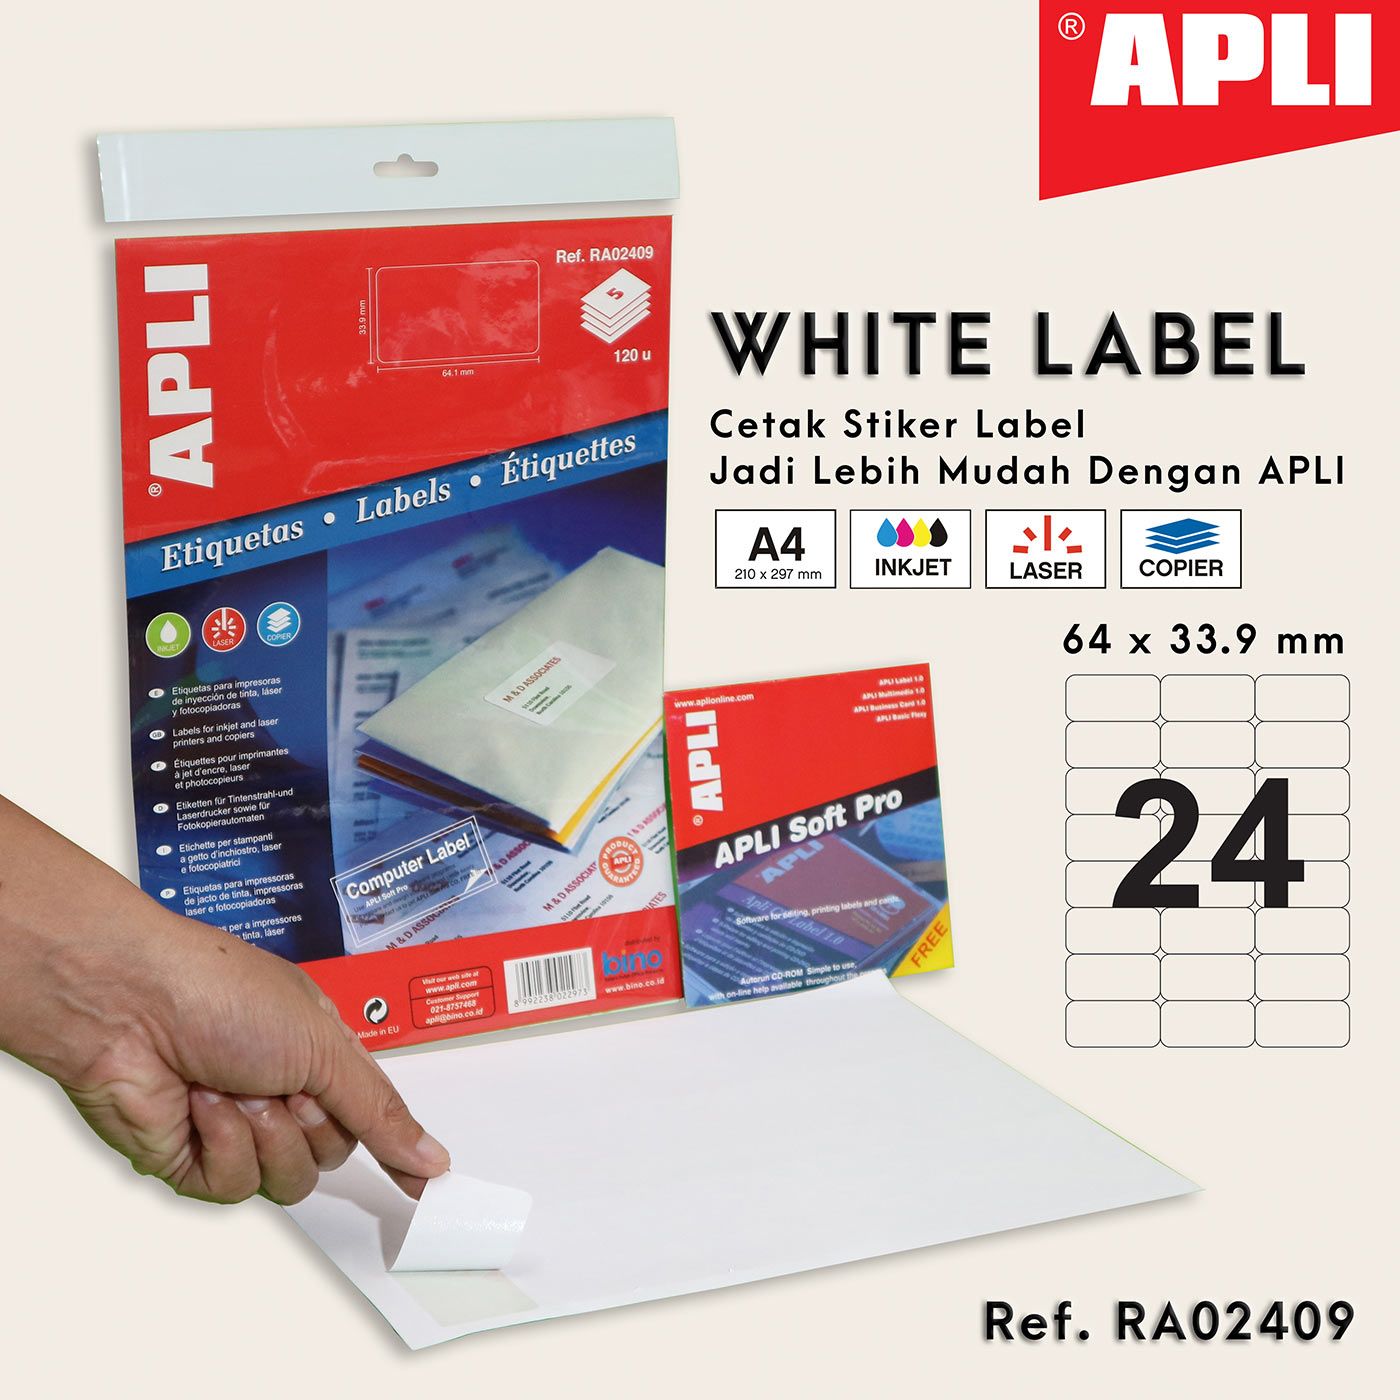 Apli Stiker Label White Paper A4 64 X 33.9 Mm - Ra02409 - 1